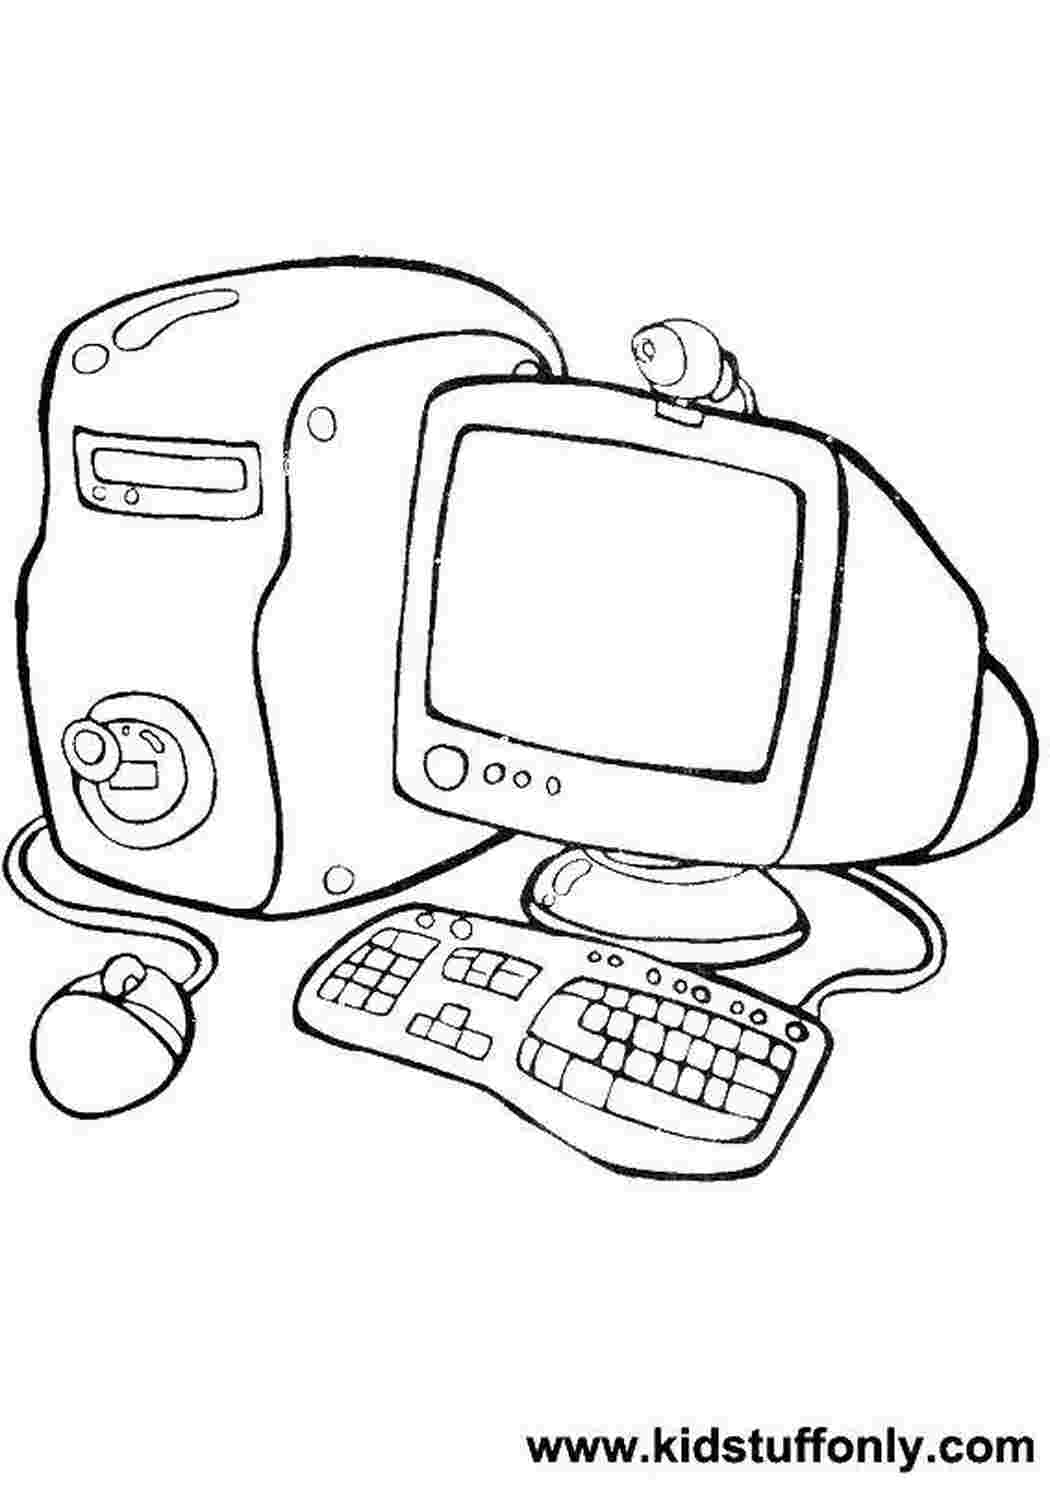 Раскраски Компьютер и системный блок раскраски монитор, системный блок, клавиатура